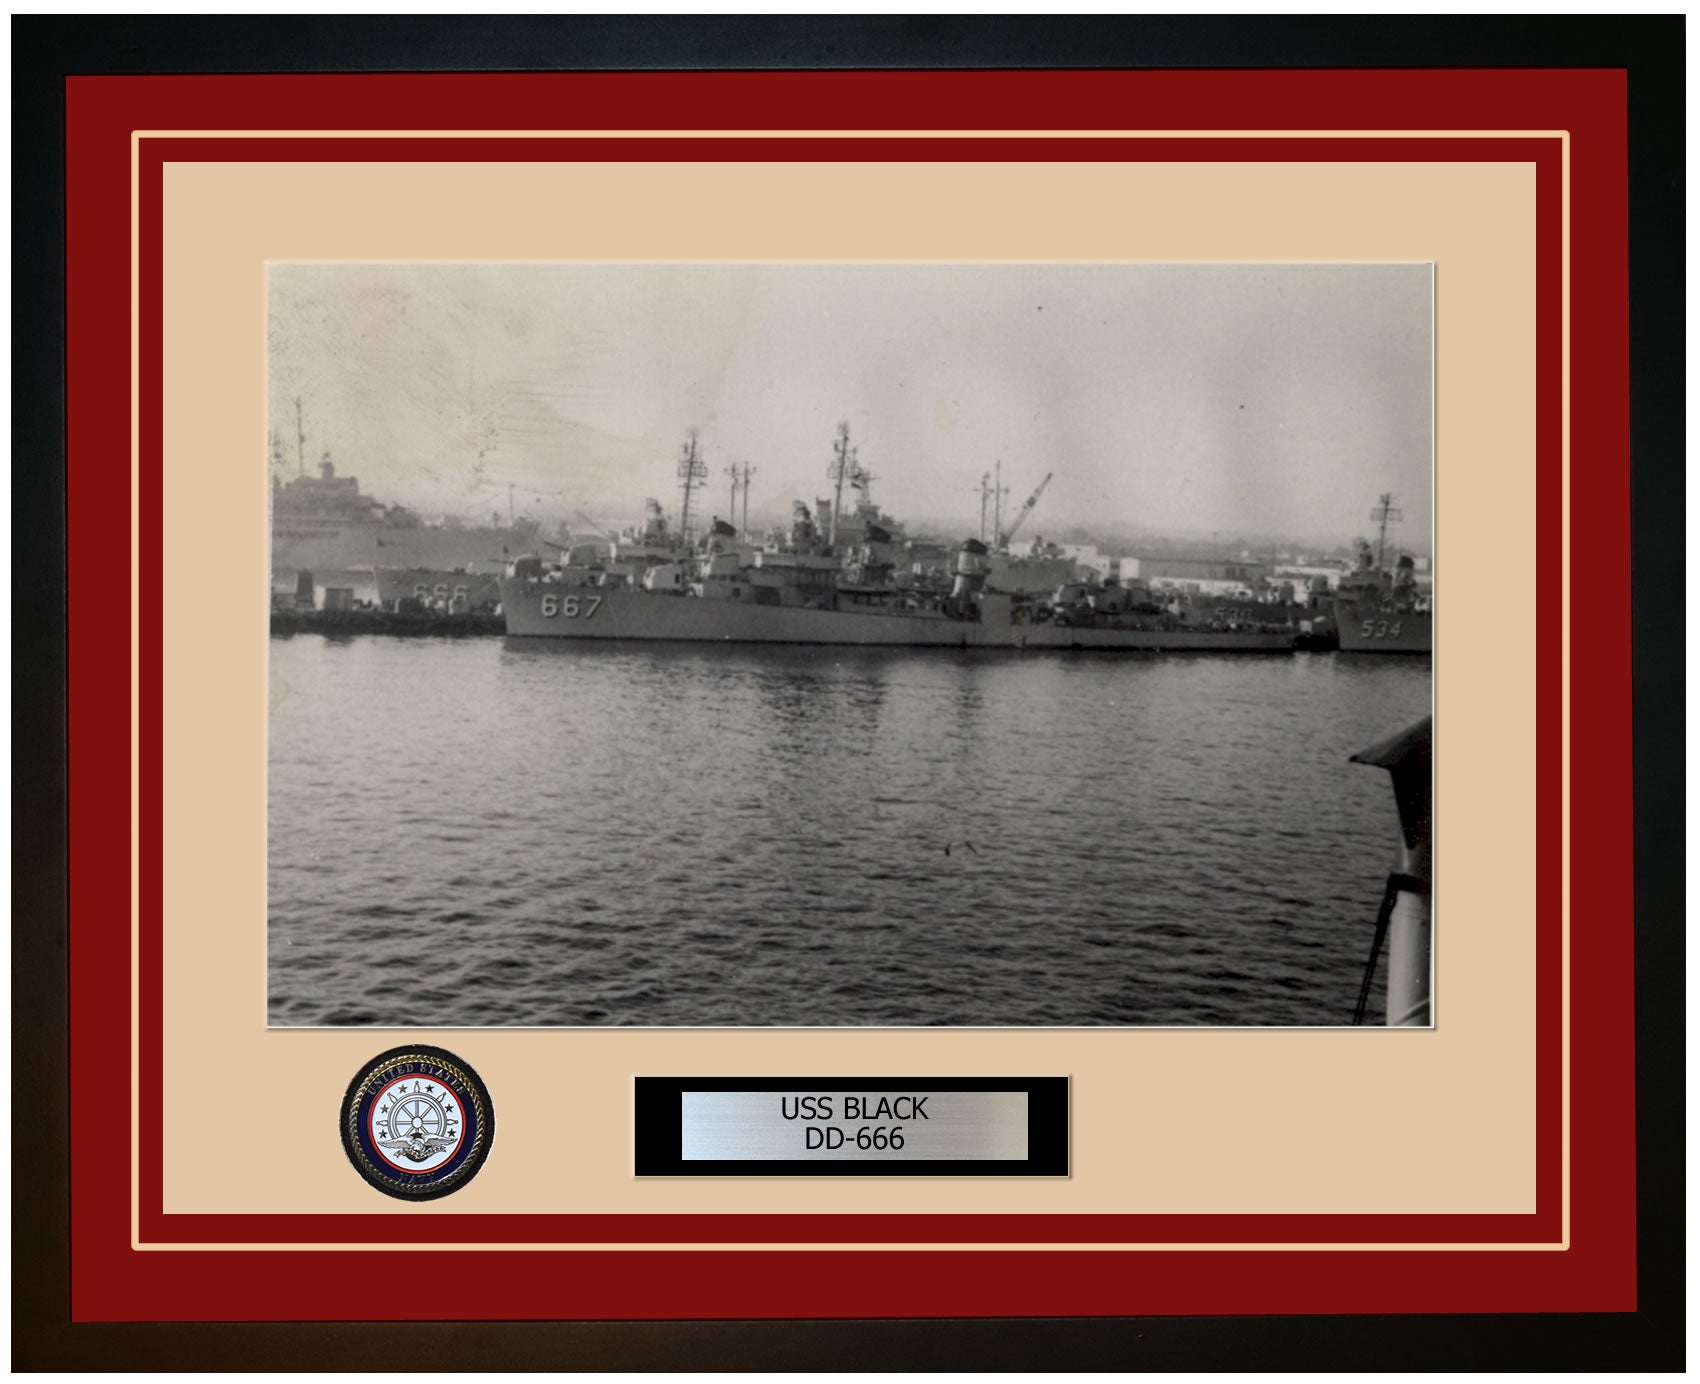 USS BLACK DD-666 Framed Navy Ship Photo Burgundy